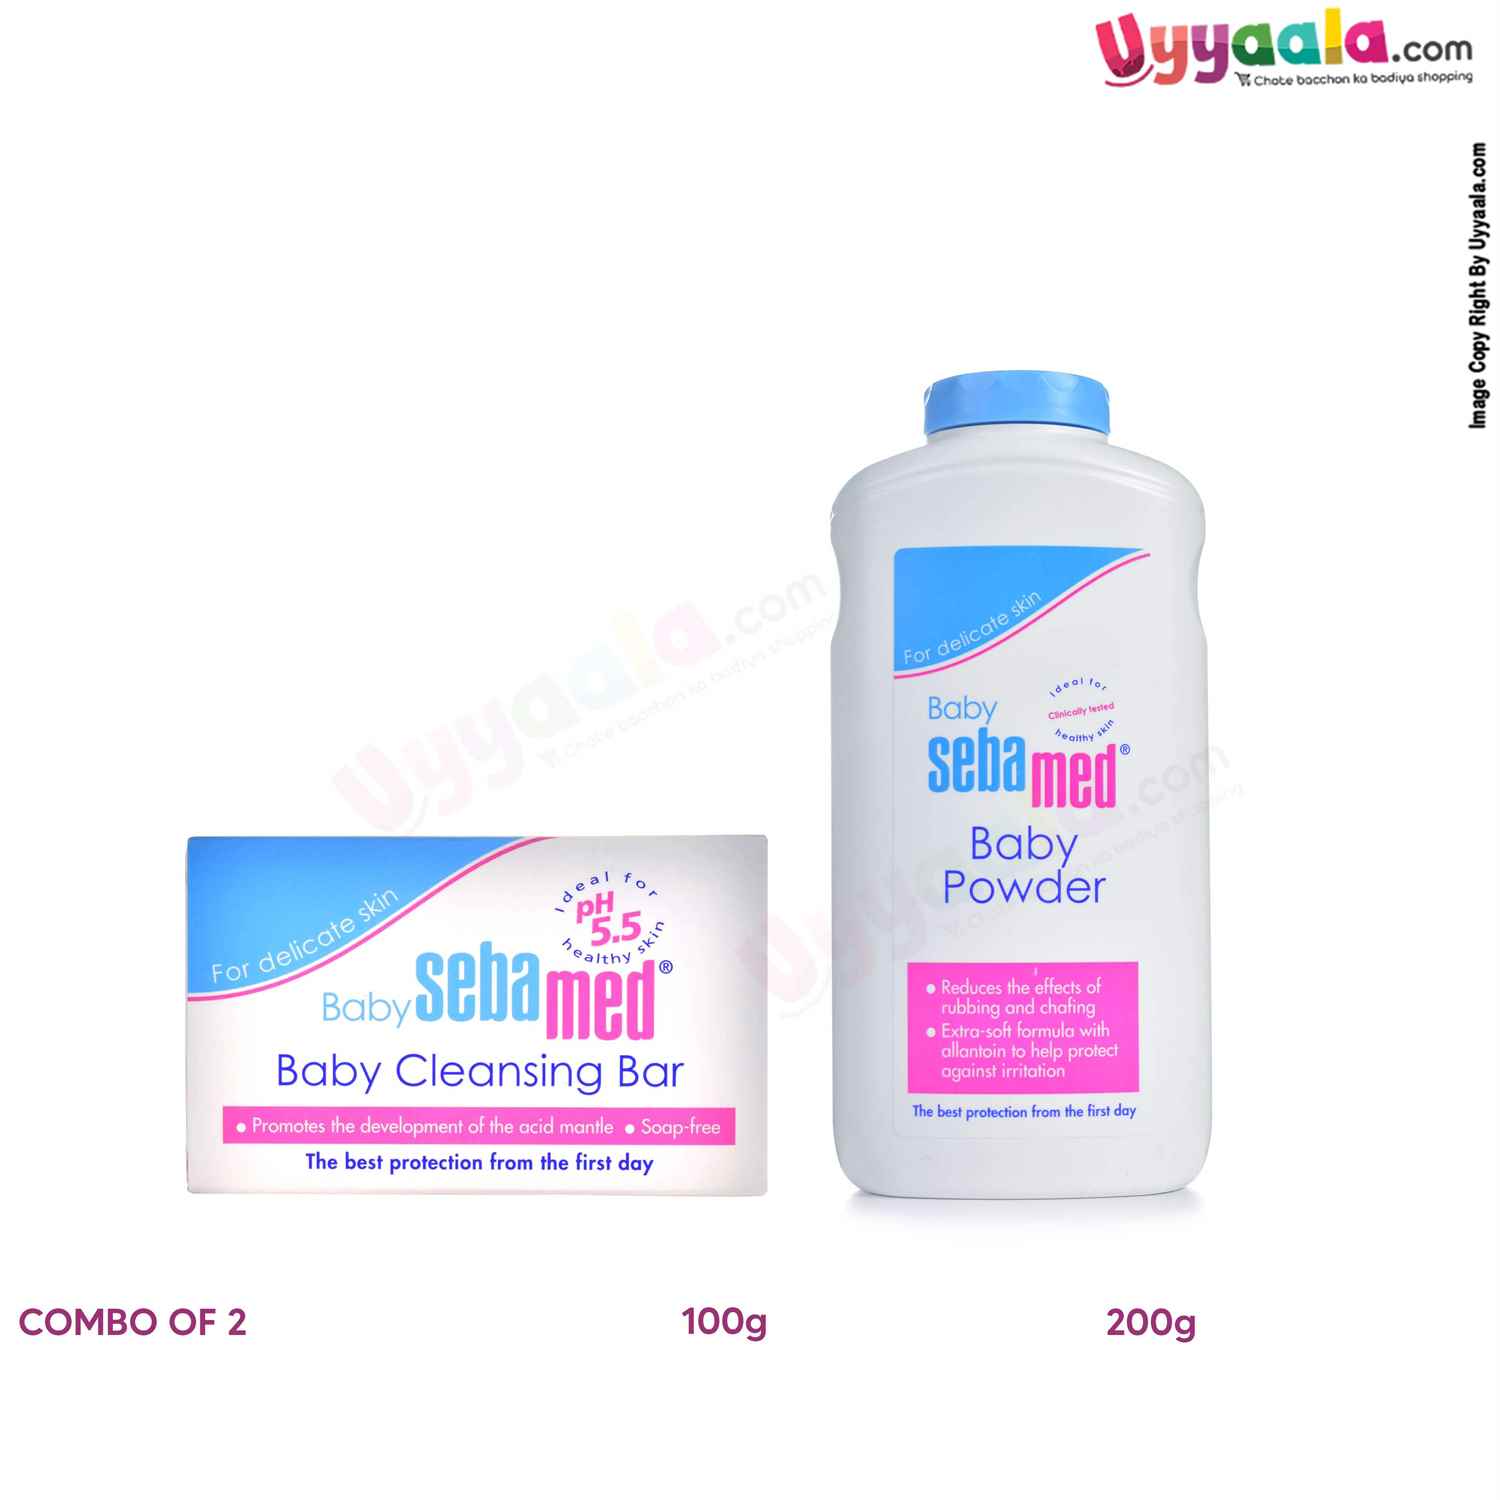 SEBAMED Baby Cleansing Bar 100g & Powder 200g ( Combo Pack )